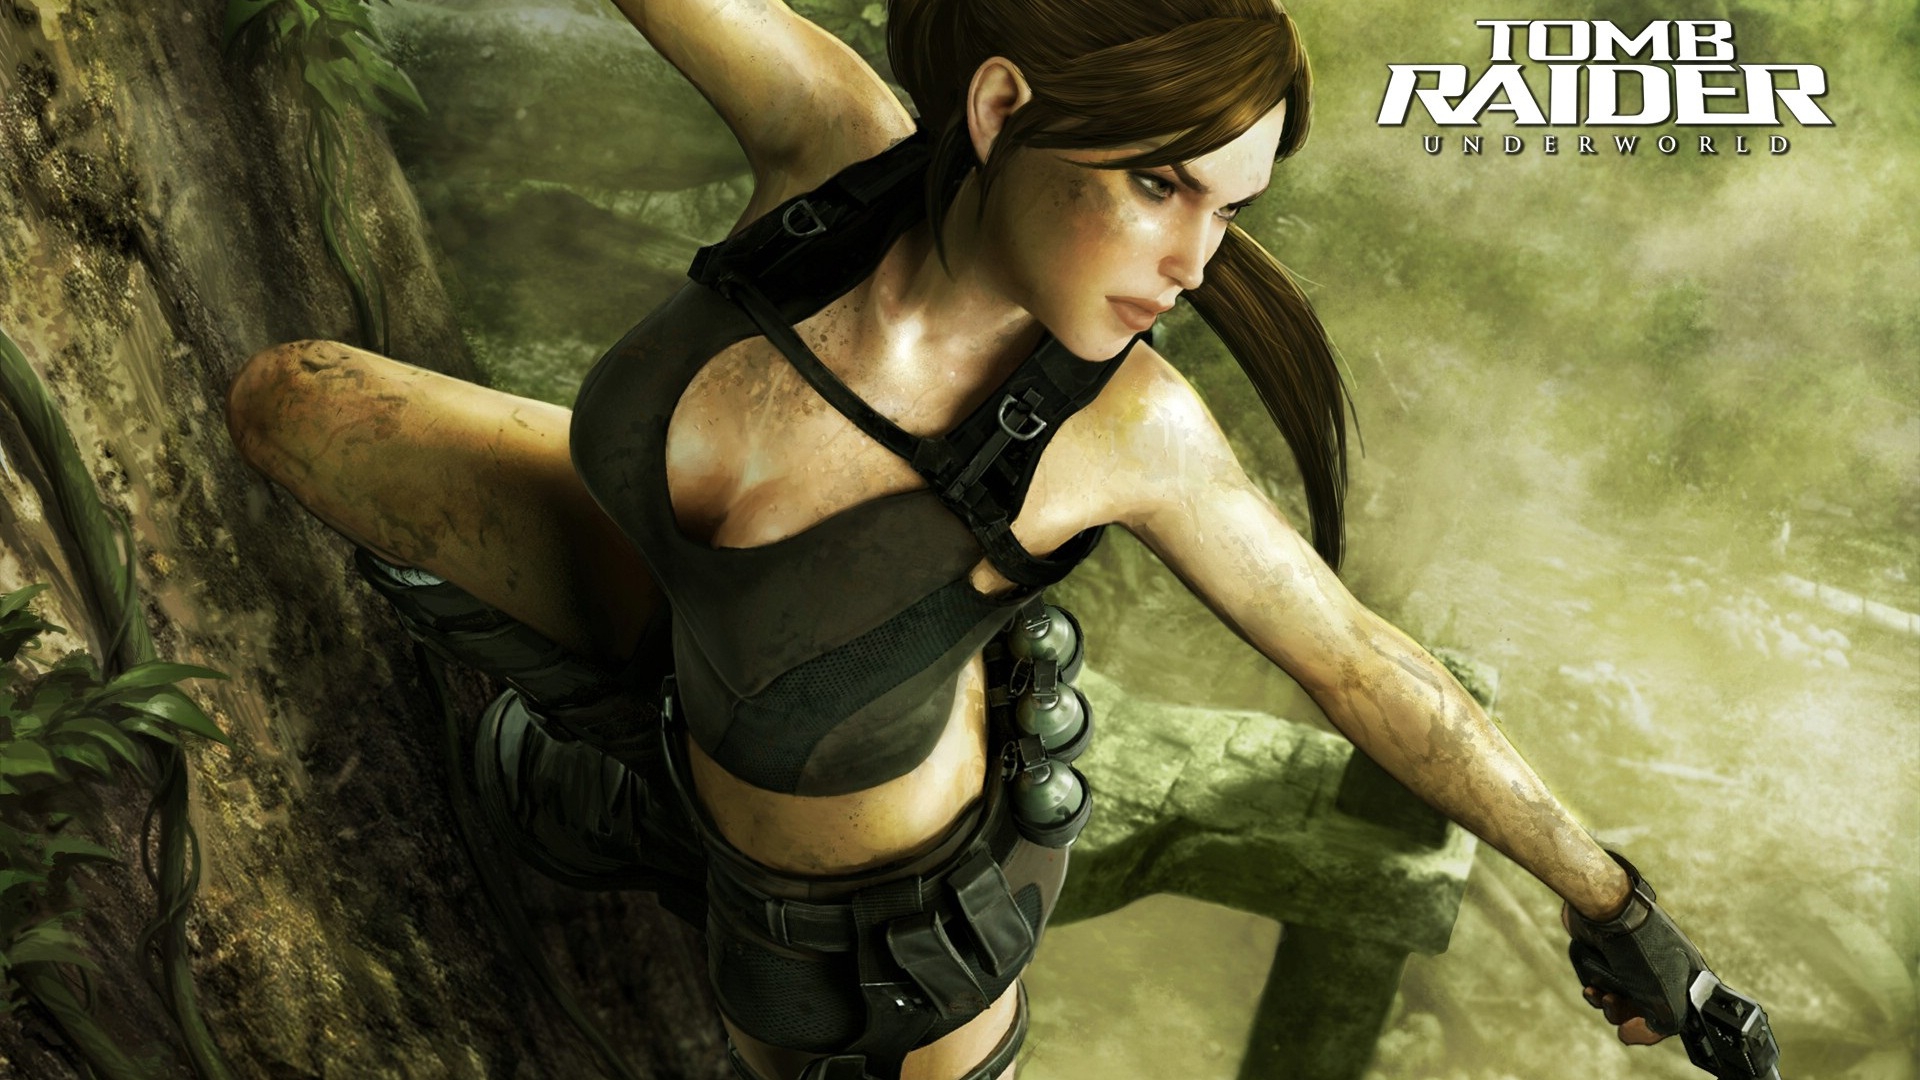 High Resolution Wallpaper | Tomb Raider: Underworld 1920x1080 px